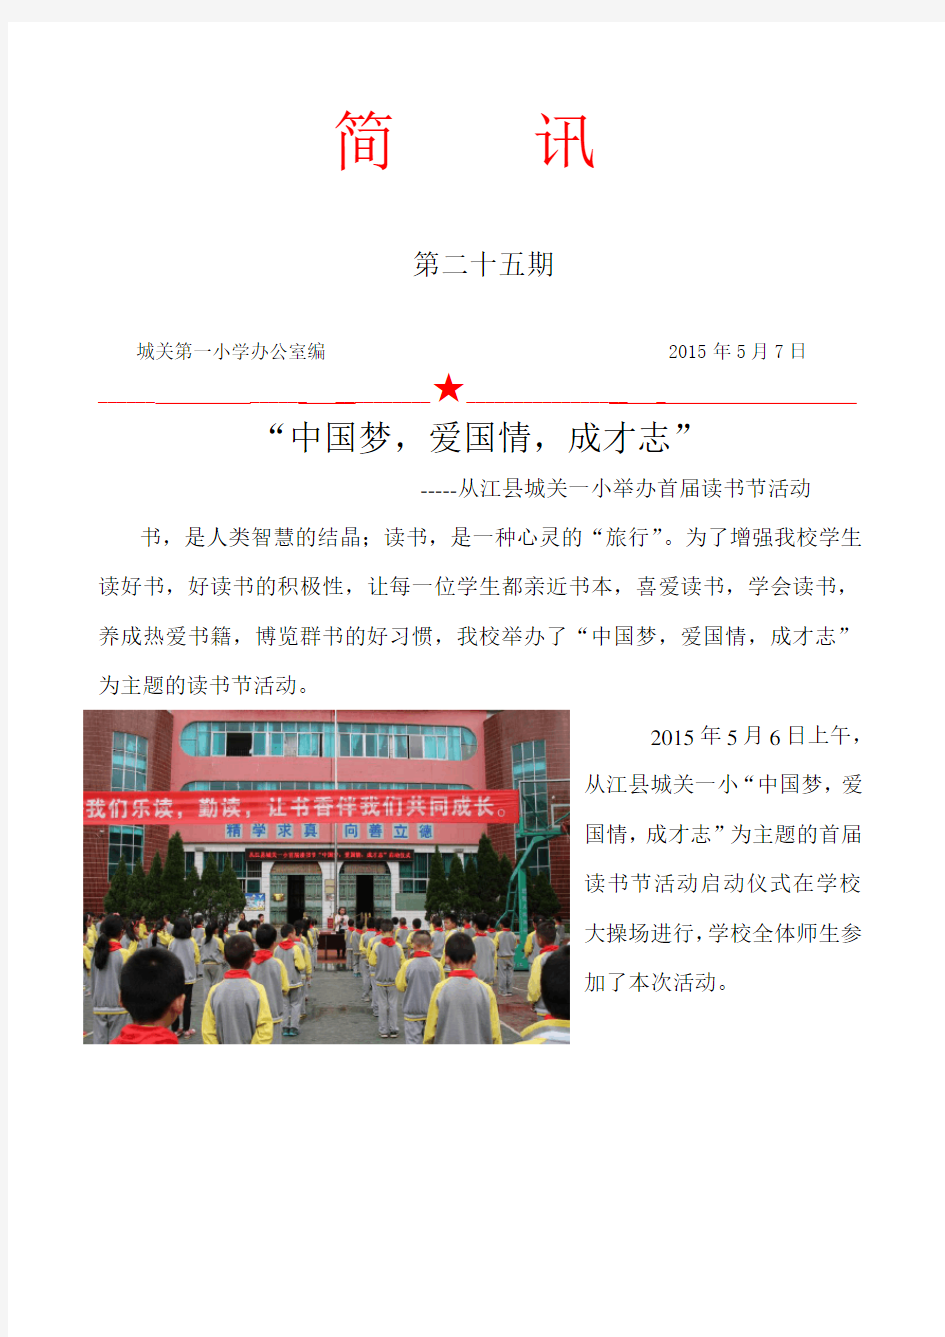 首届读书节活动简讯-“中国梦,爱国情,成才志”启动